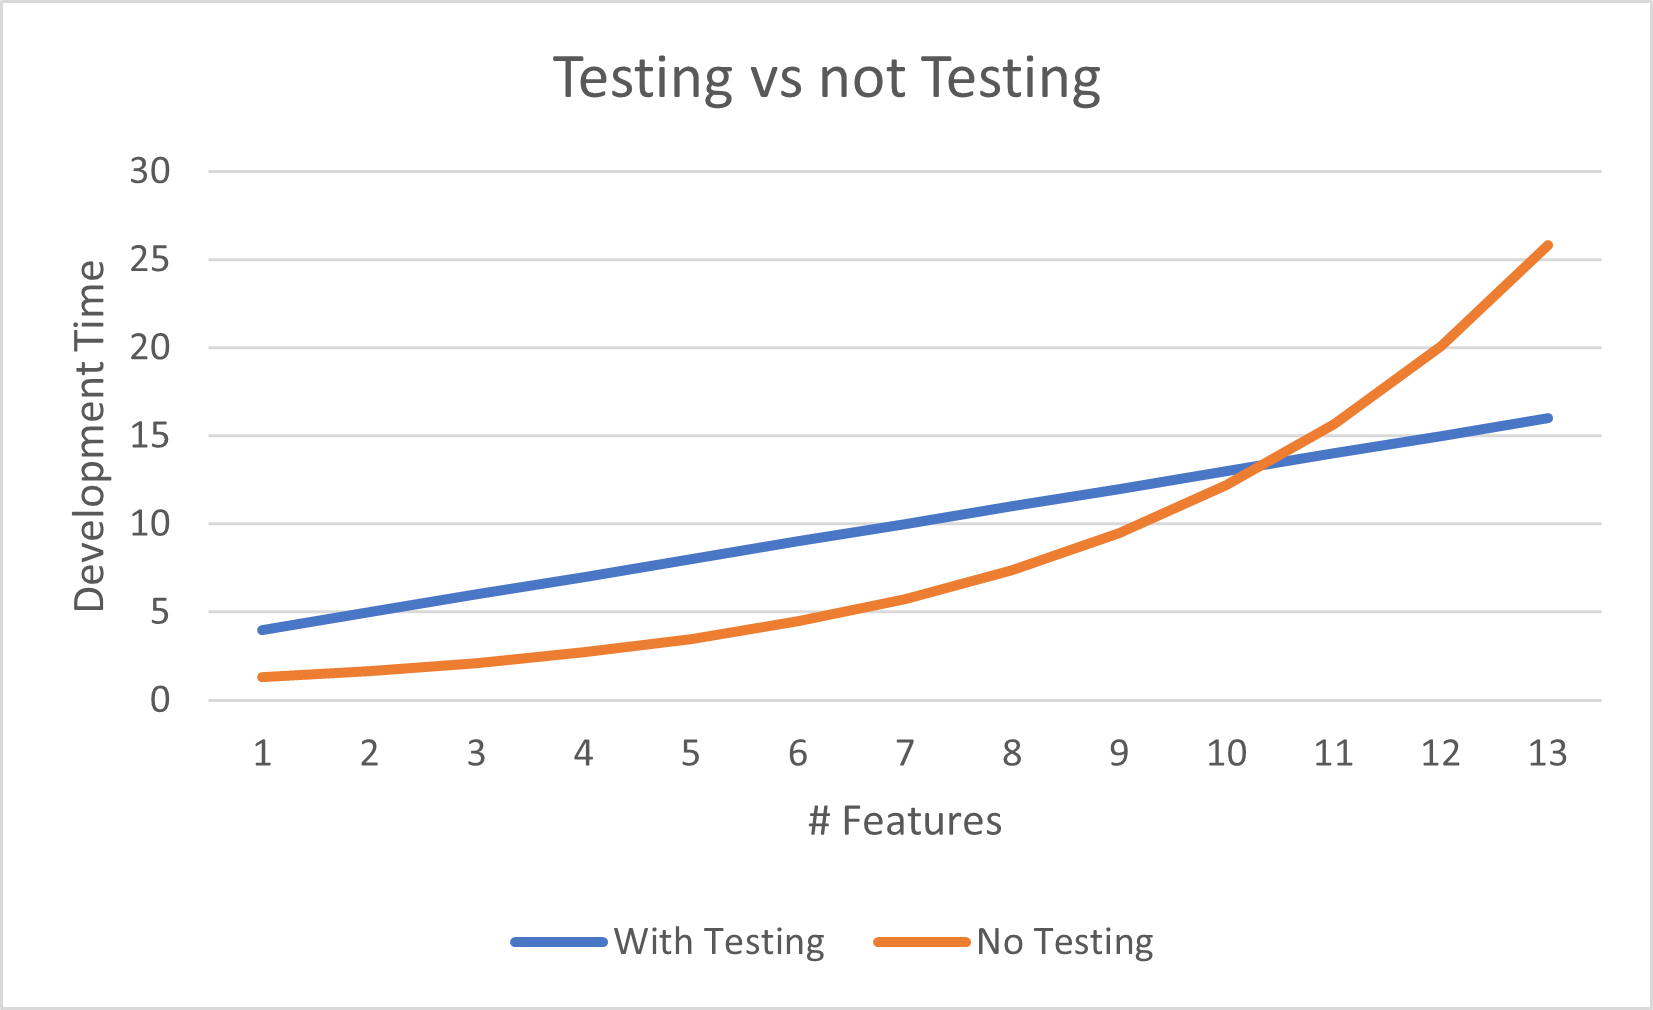 Testing v. No Testing